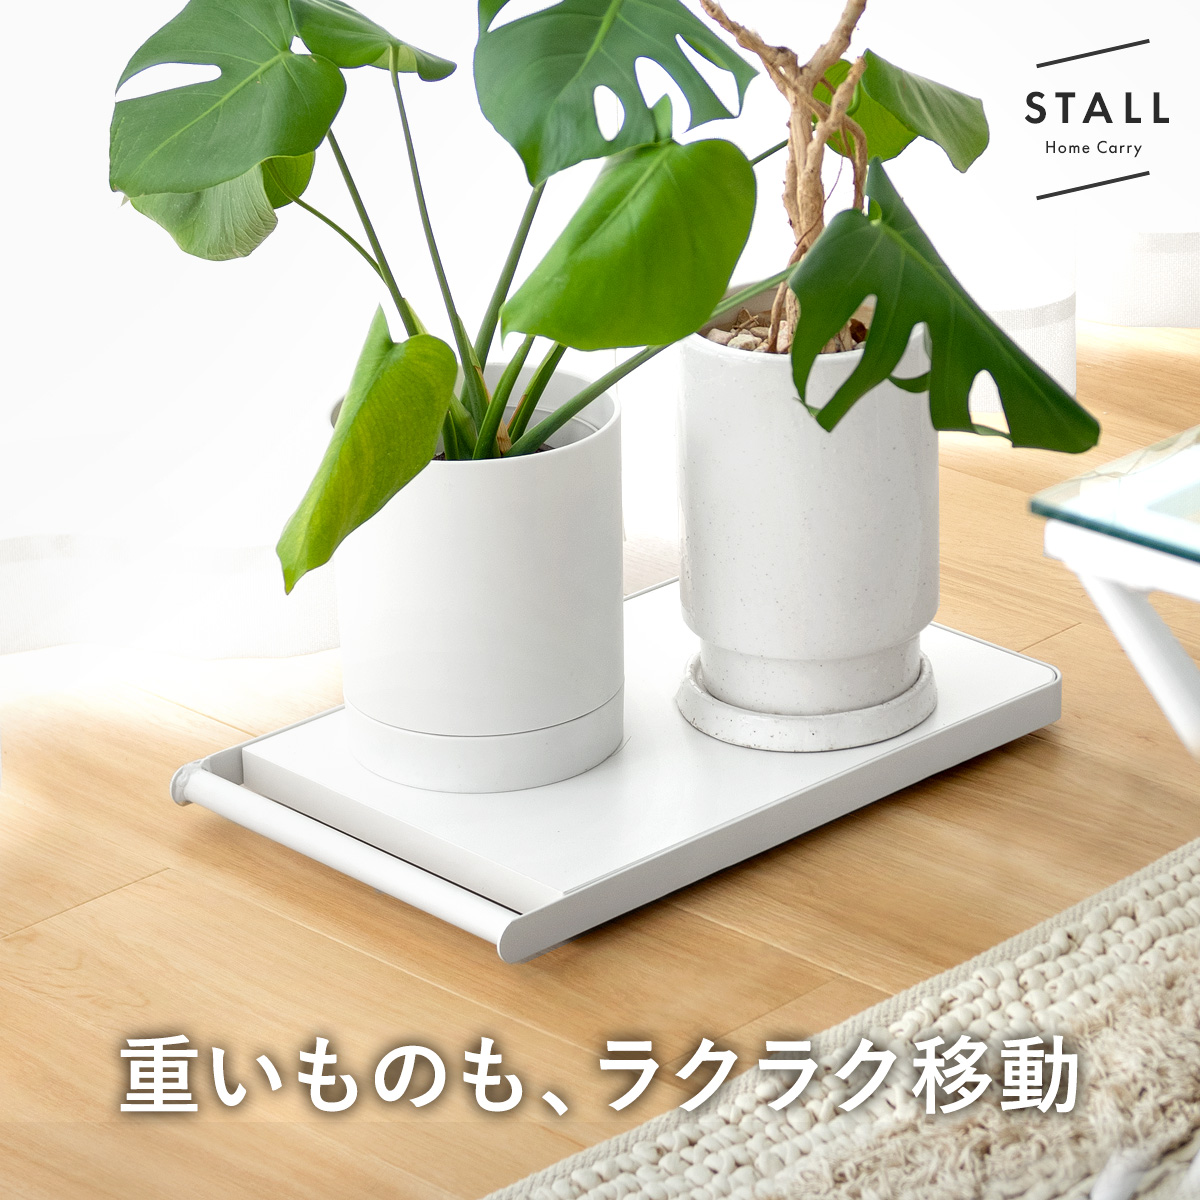 薄型ホームキャリー STALL(ストール) 【公式】 エア・リゾーム インテリア・家具通販